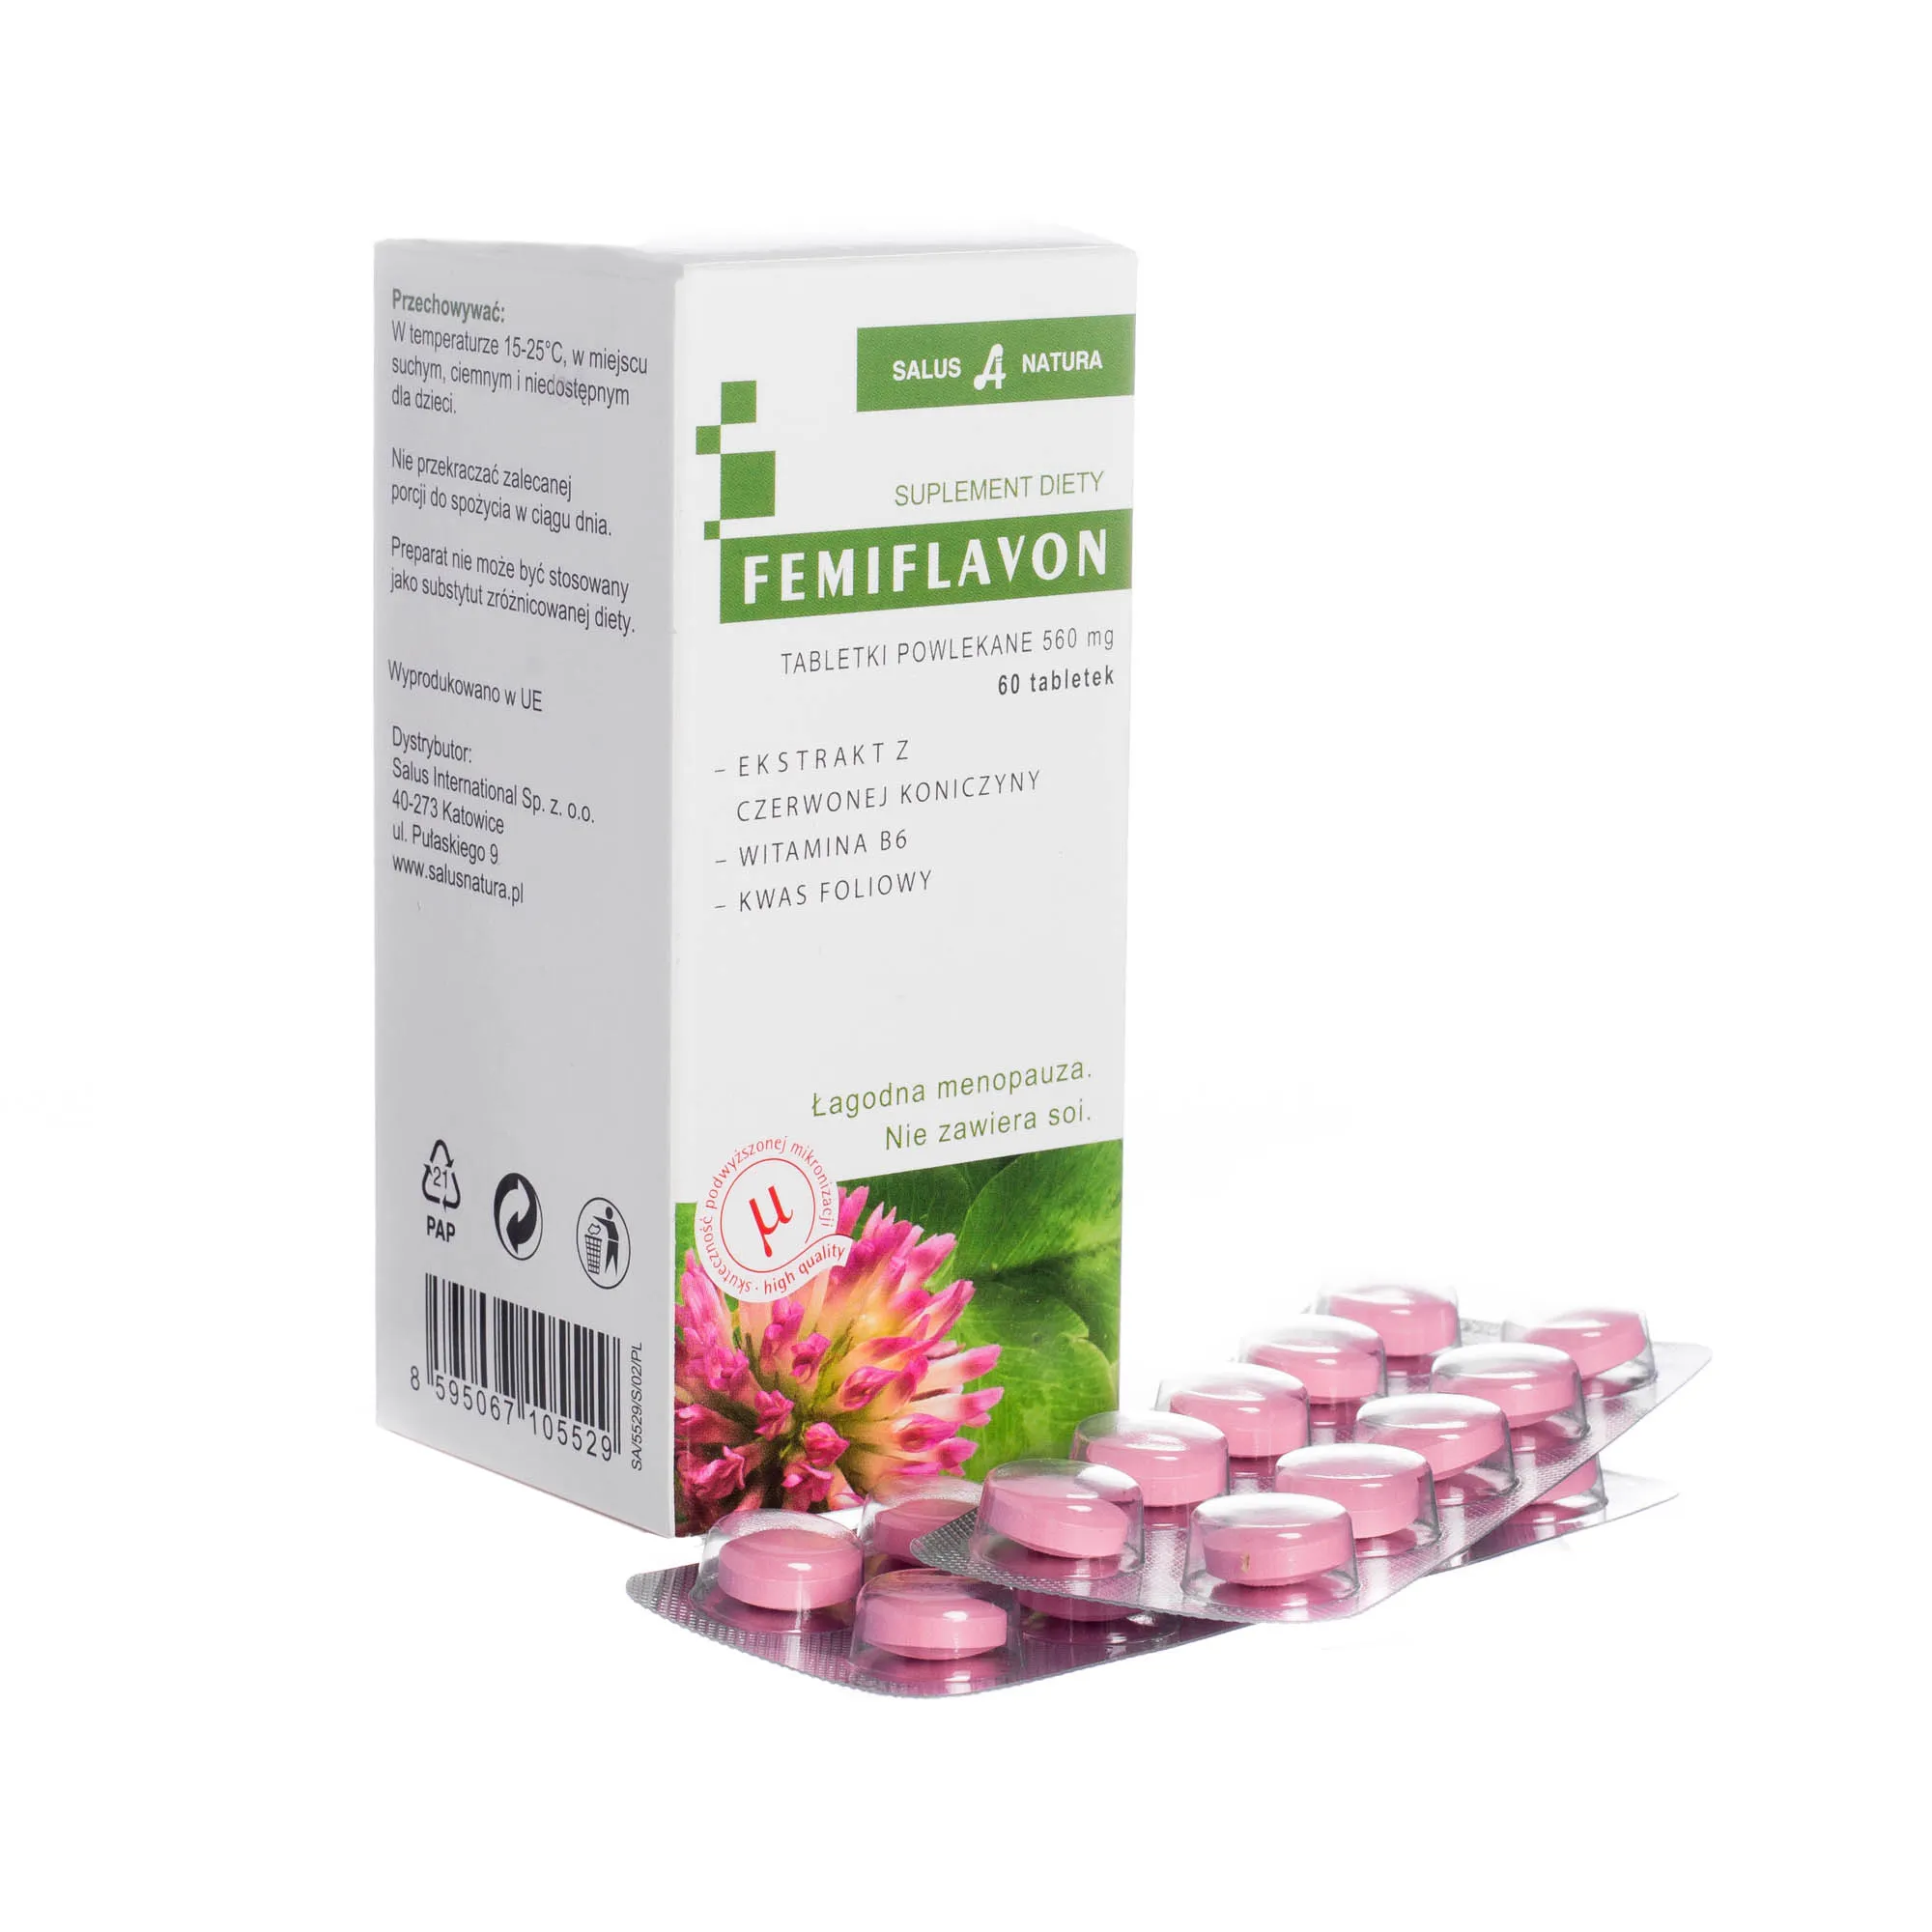 Femiflavon - suplement diety łagodzący objawy menopauzy, 60 tabletek